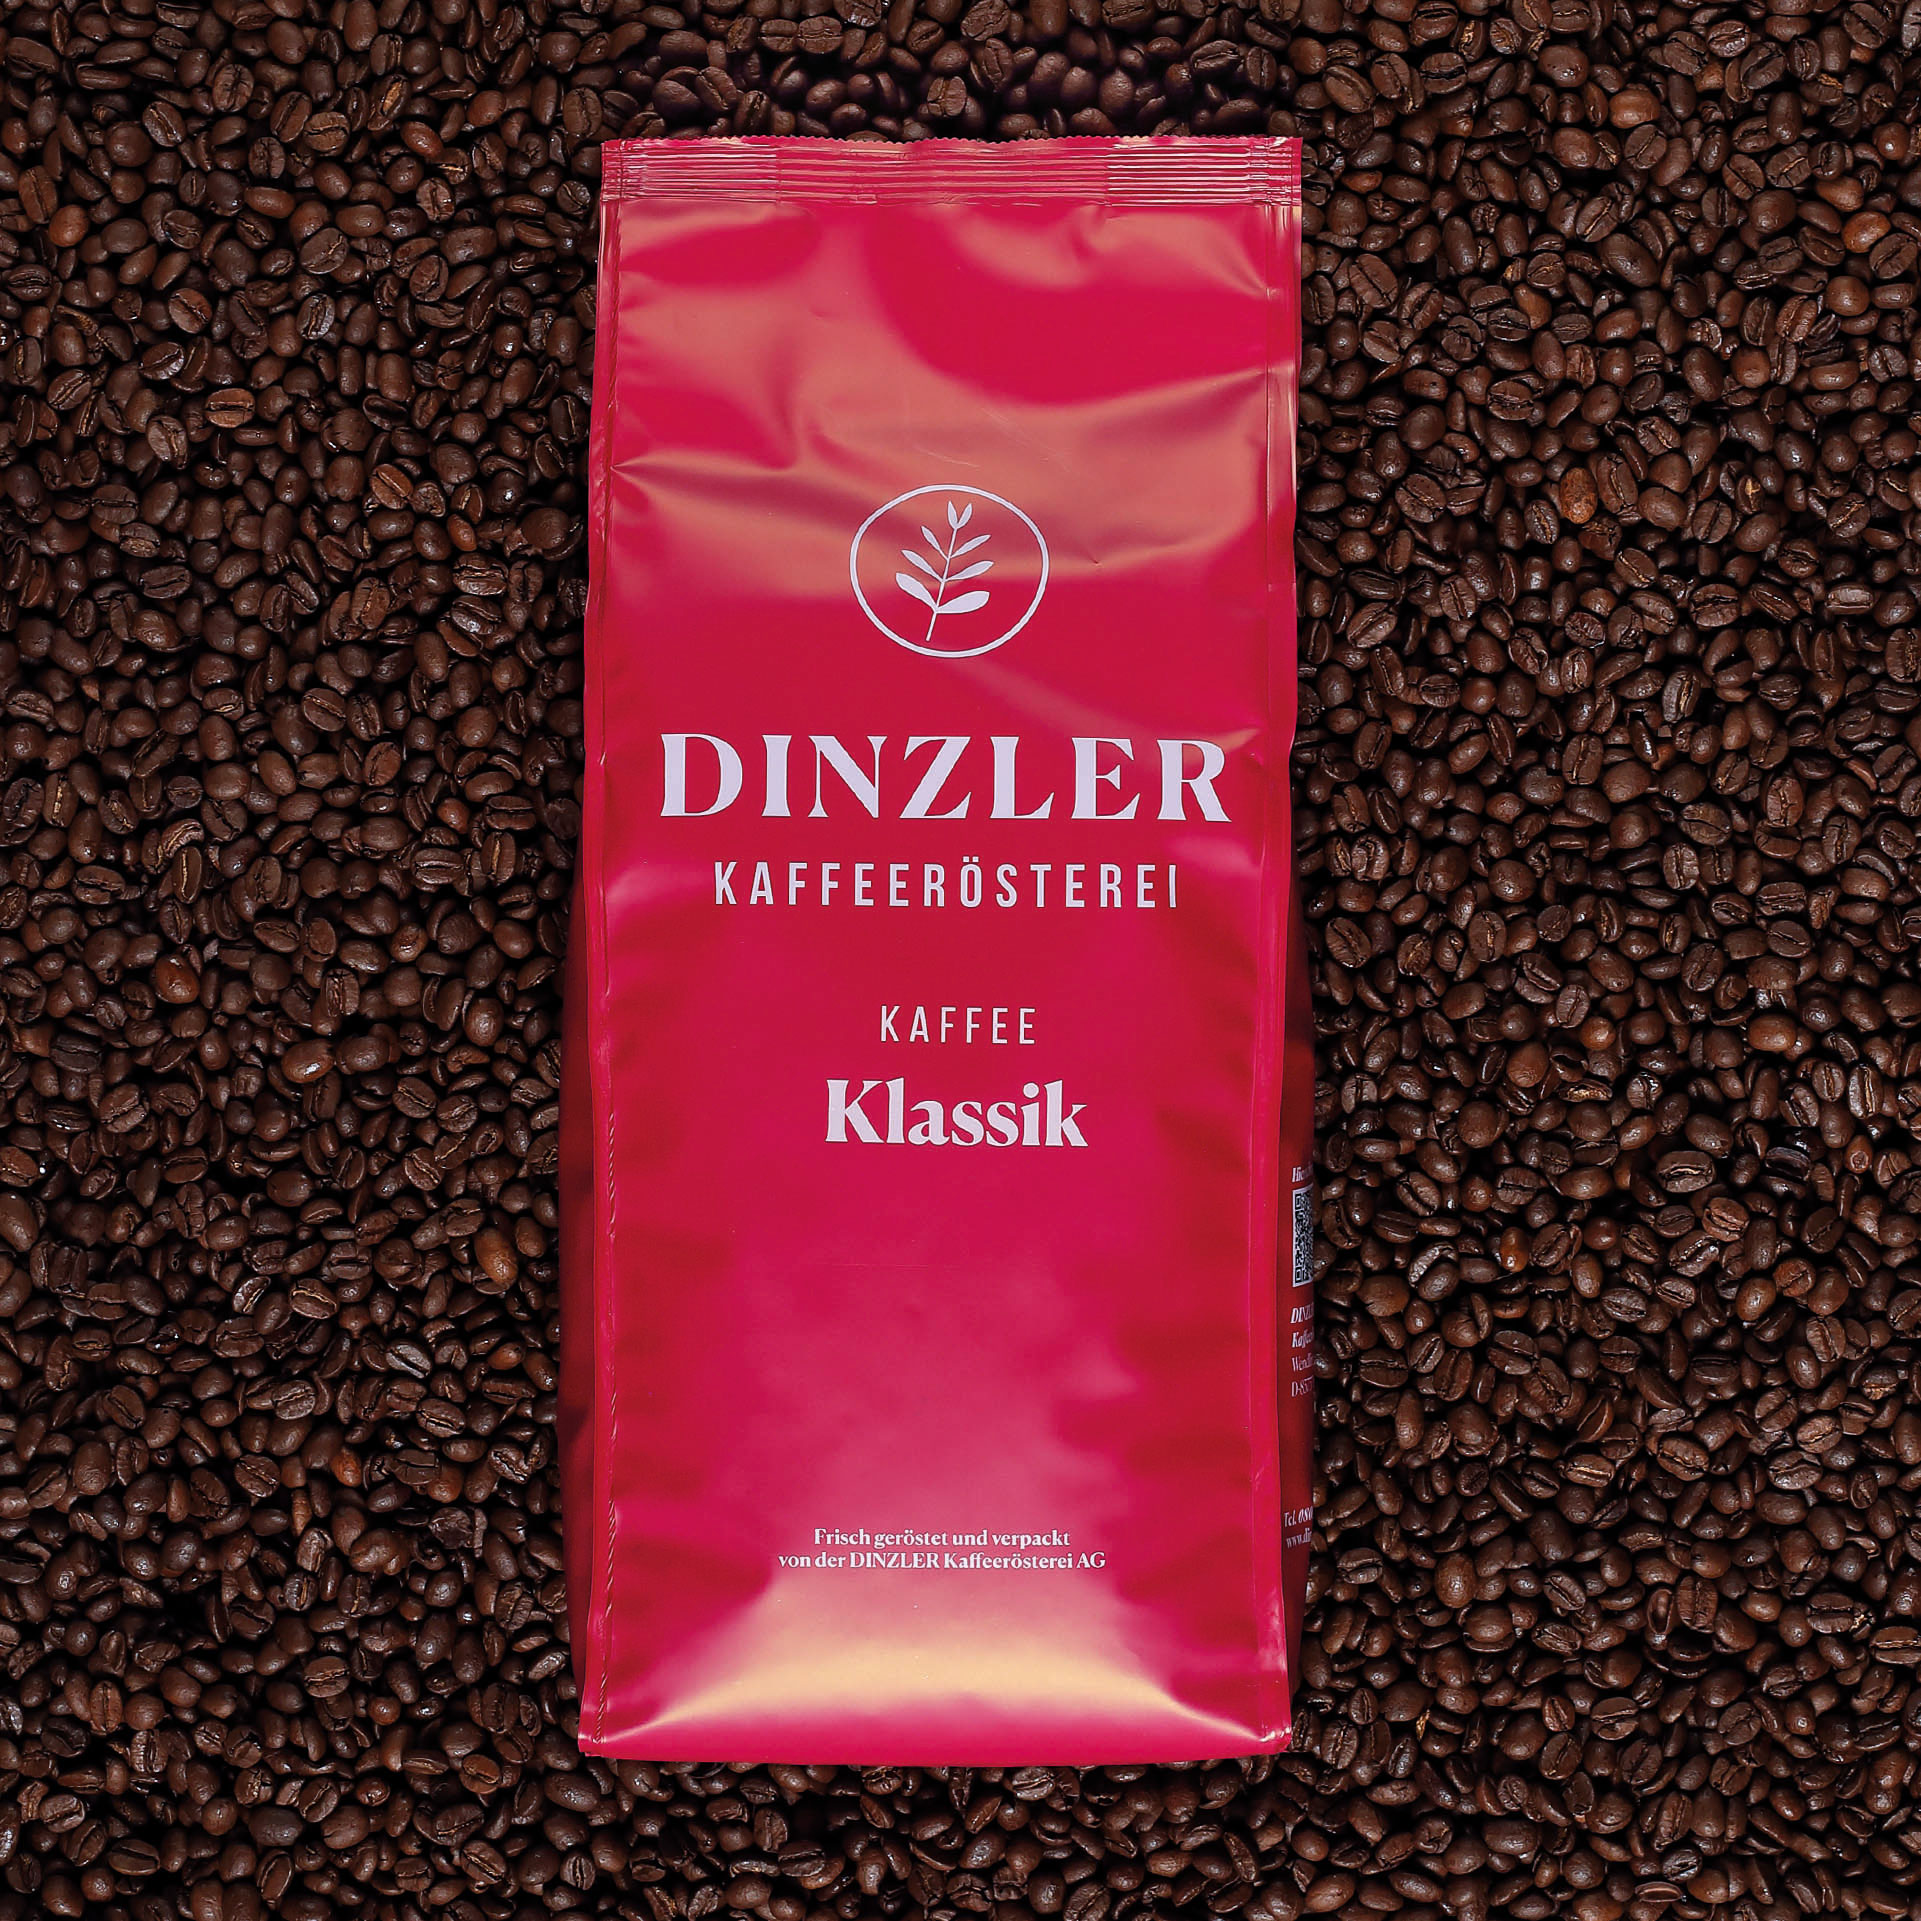 Kaffee Klassik | DINZLER Shop